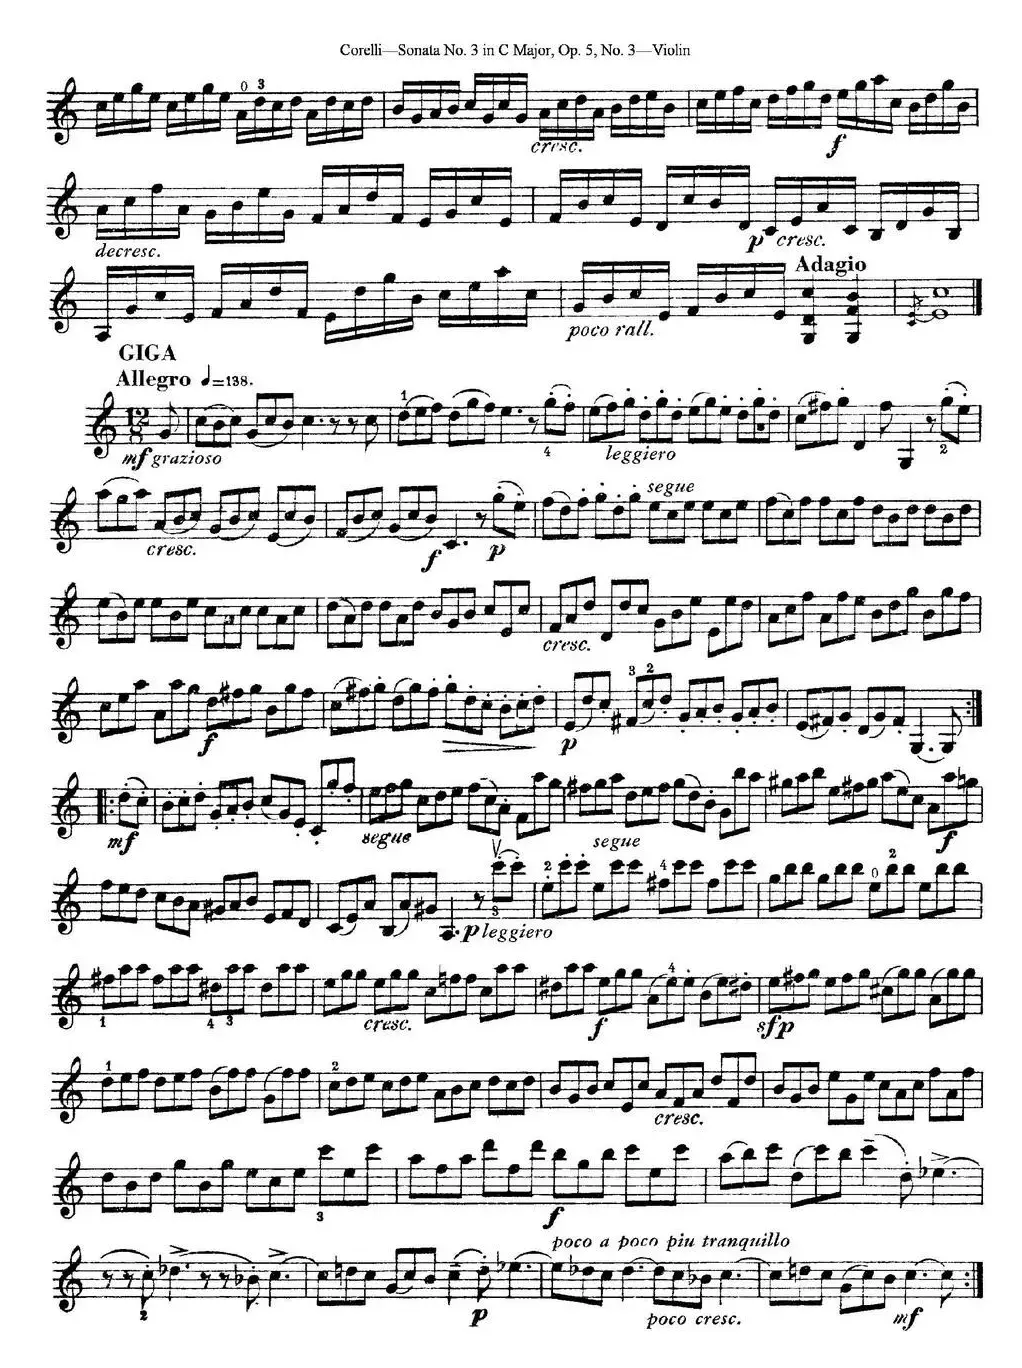 Sonata No.3 in C MajorOp.5 No.3